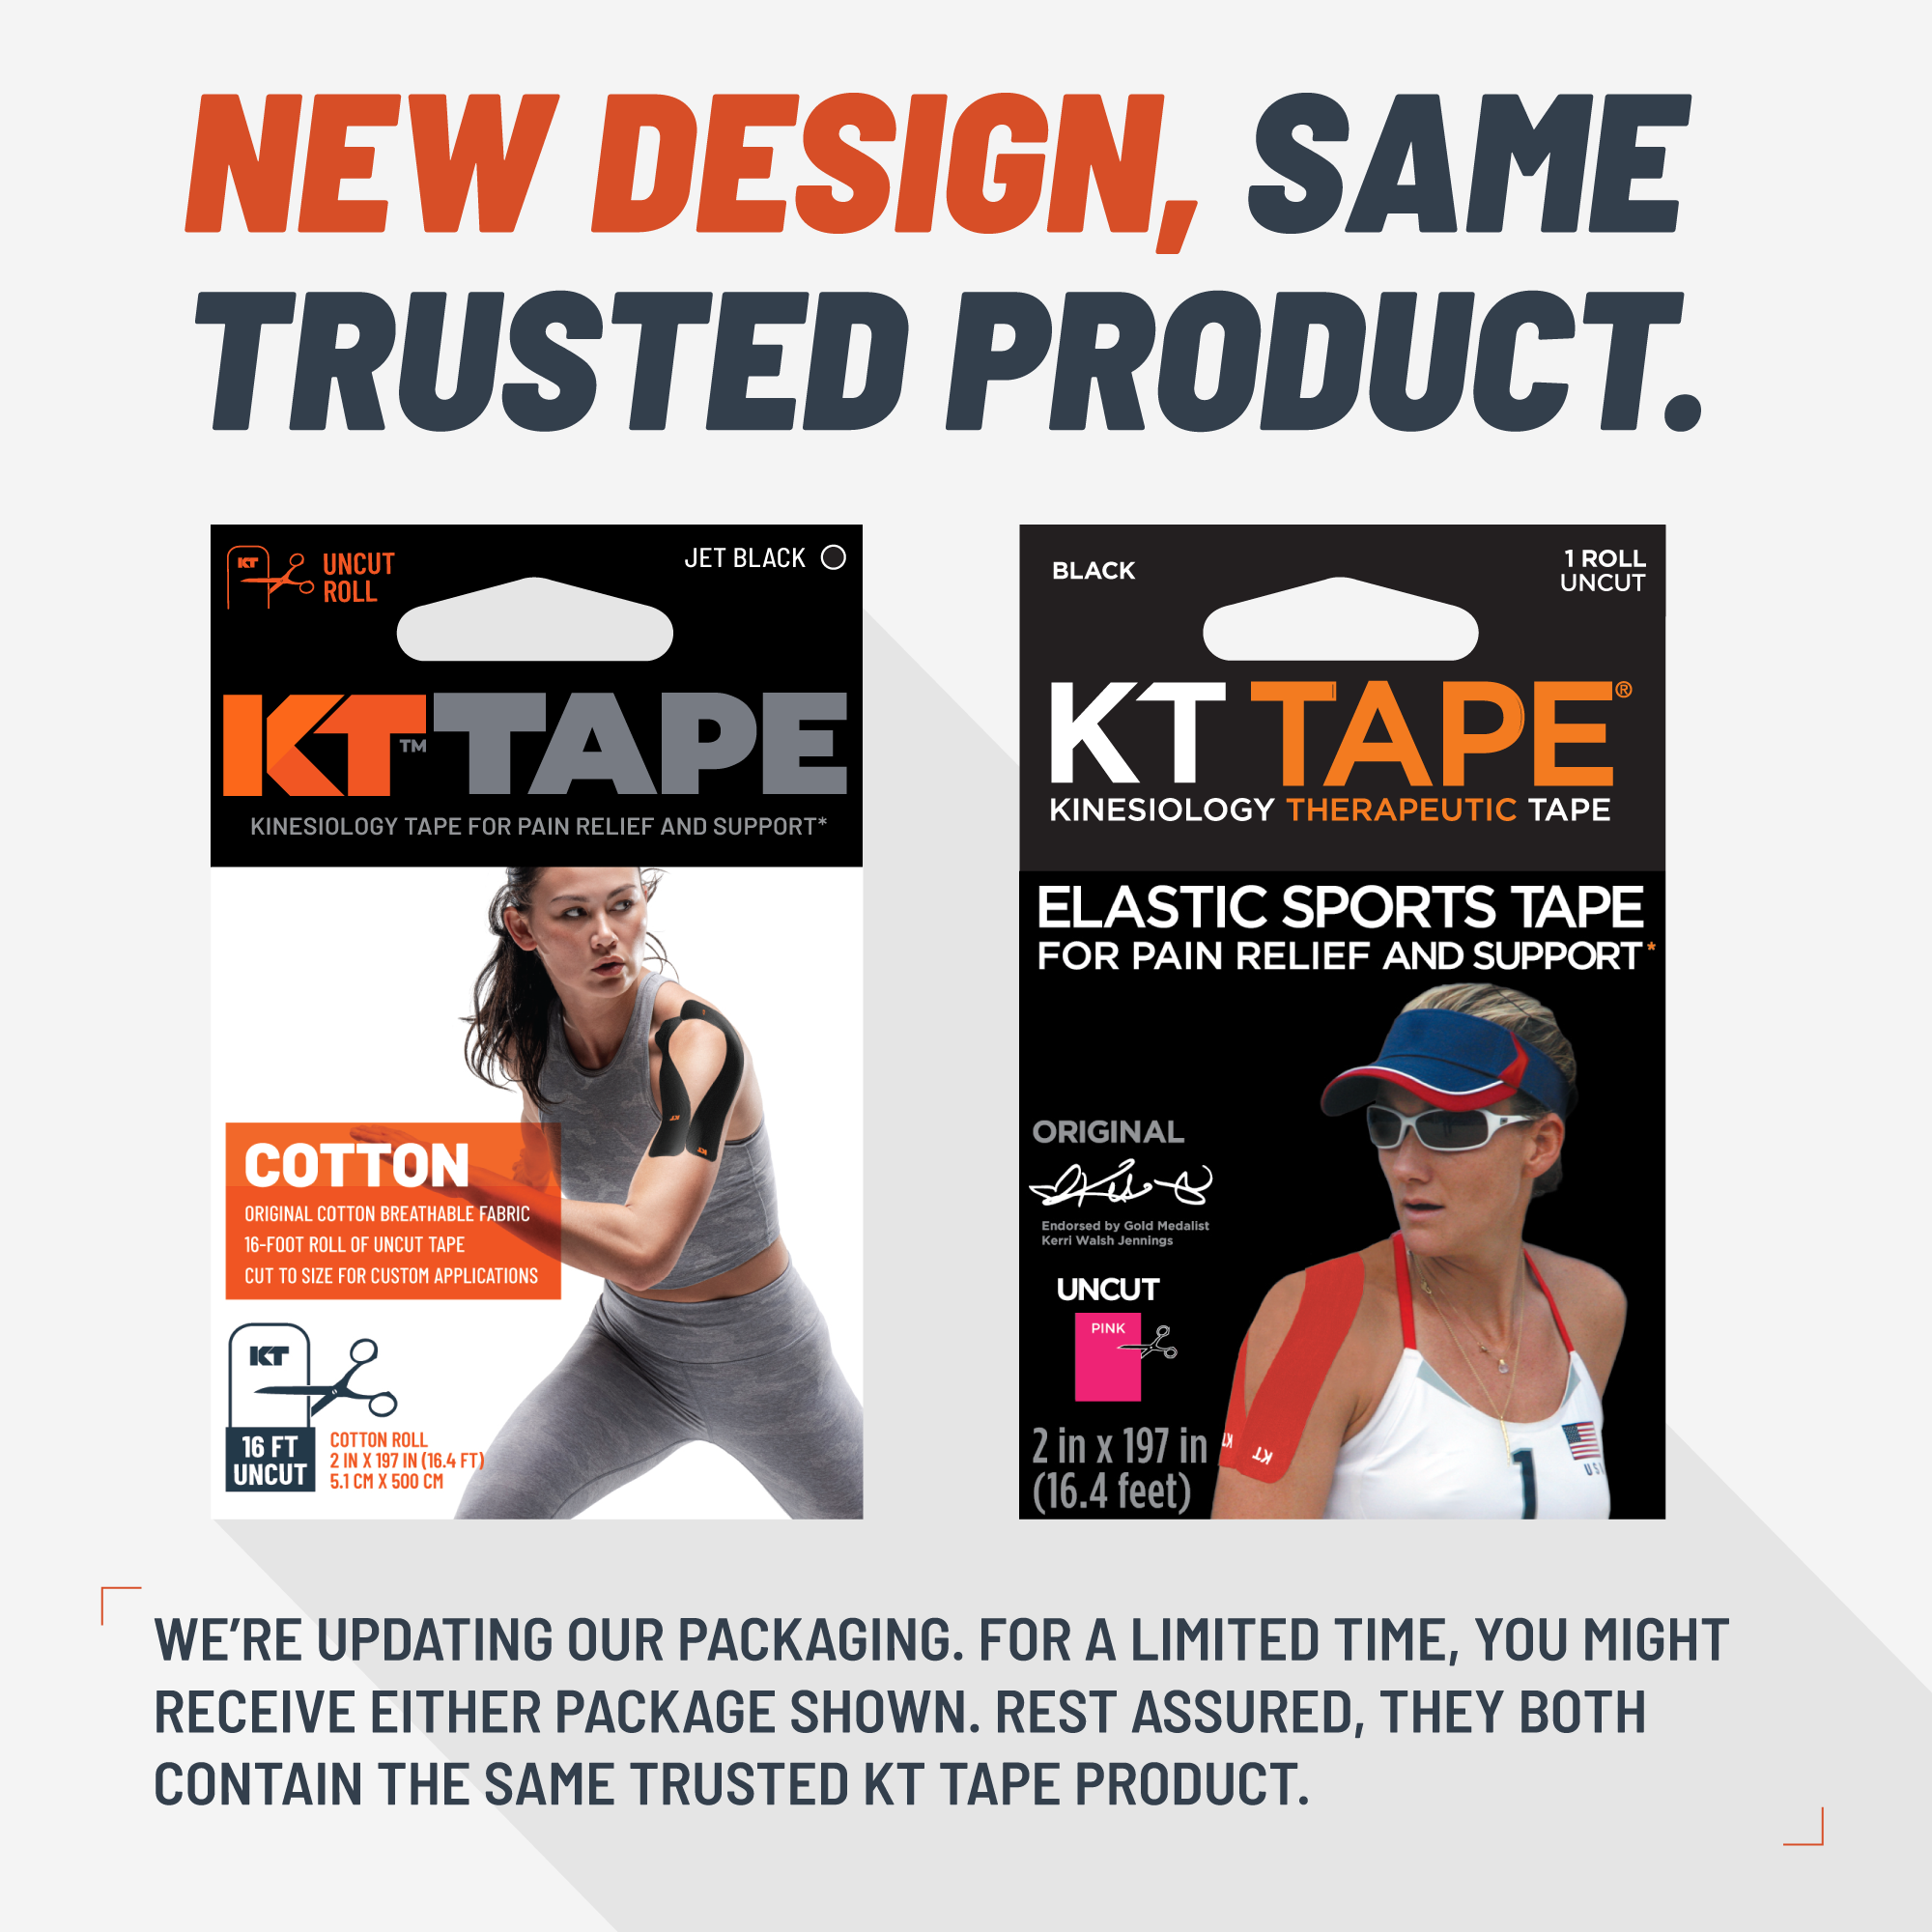 KT Tape Pro Uncut Single Roll